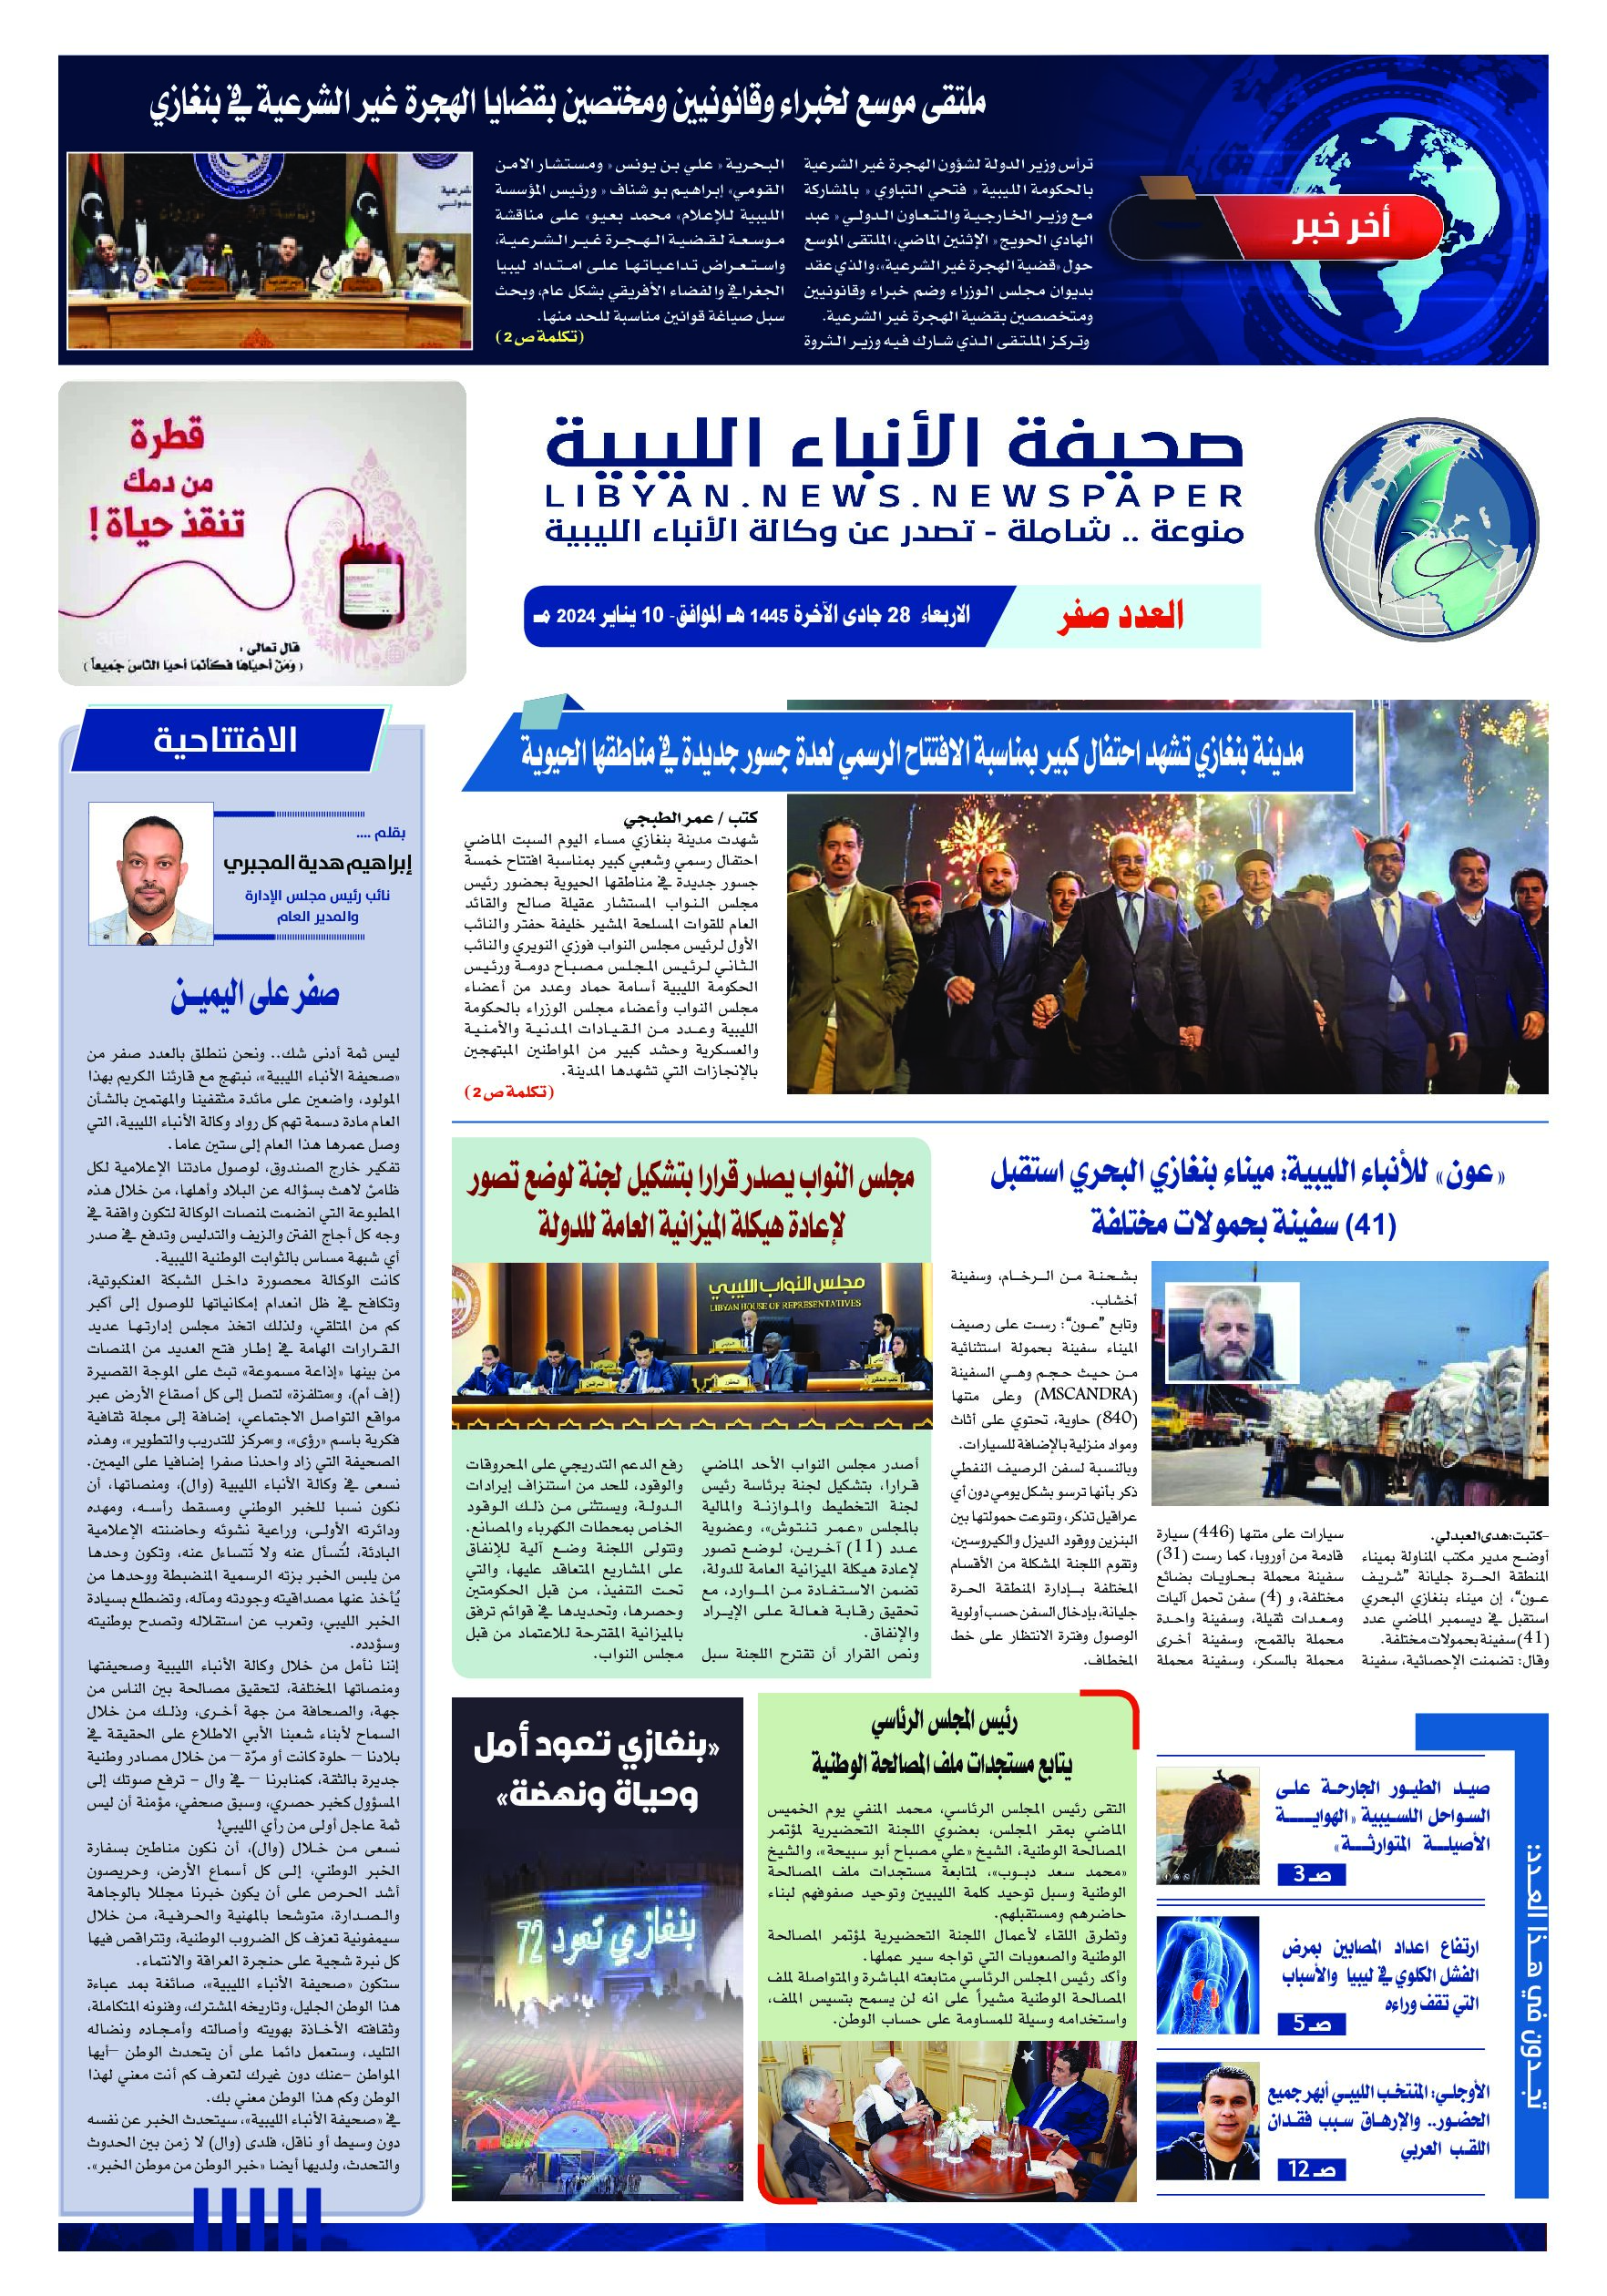 صحيفة الأنباء الليبية (العدد صفر)